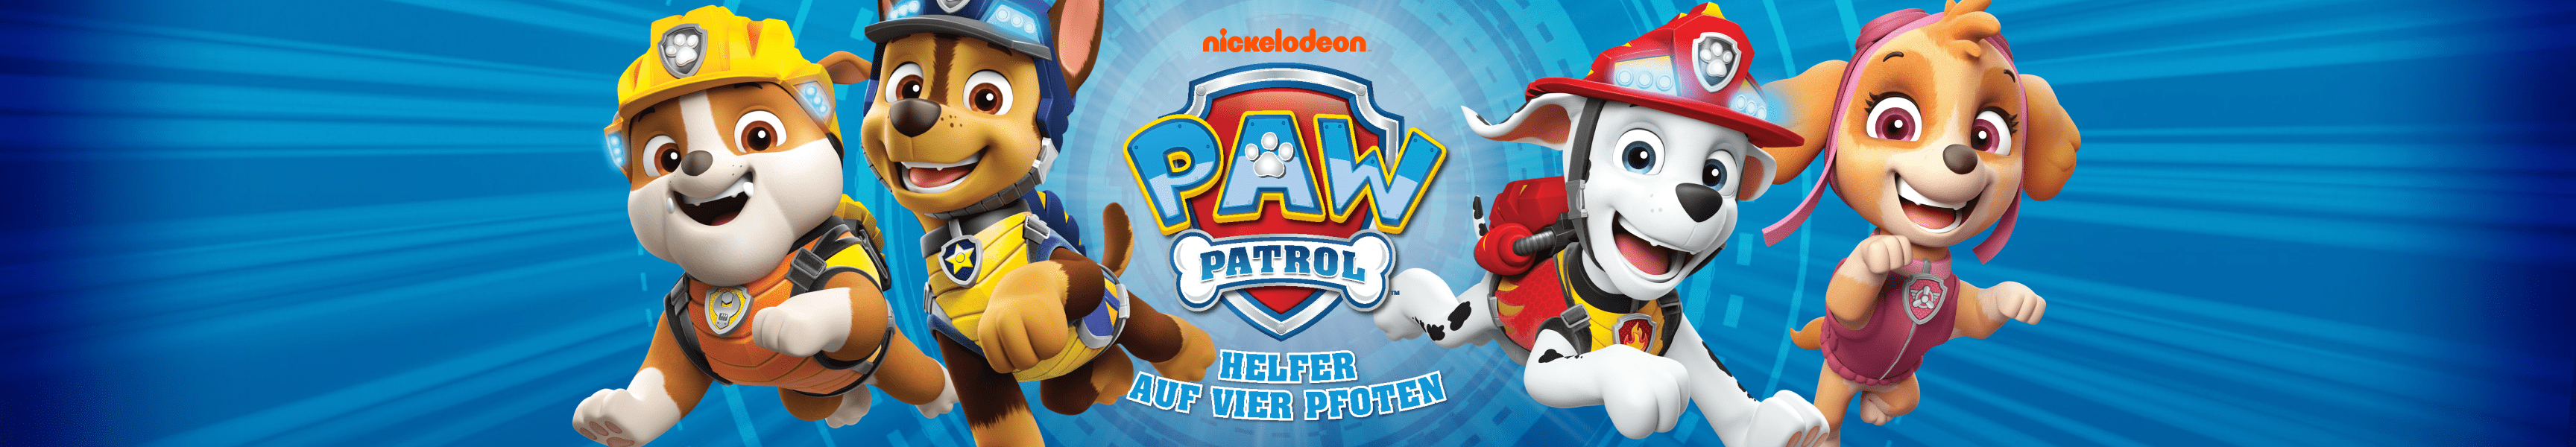 PAW Patrol Los más vendidos